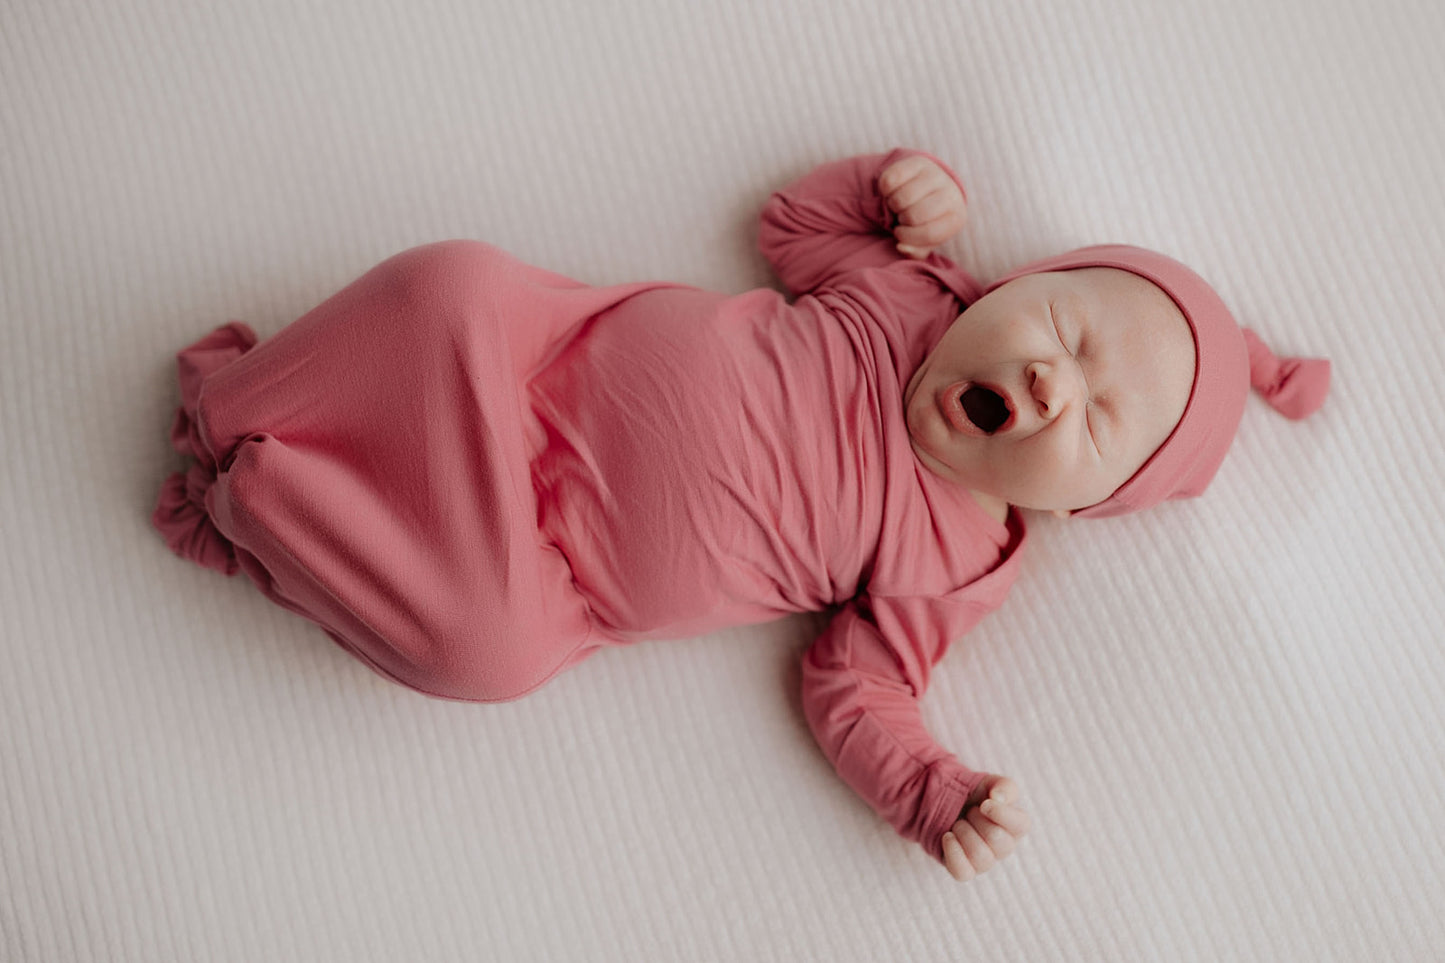 Bevallingsjurk 'Roze' met newbornset